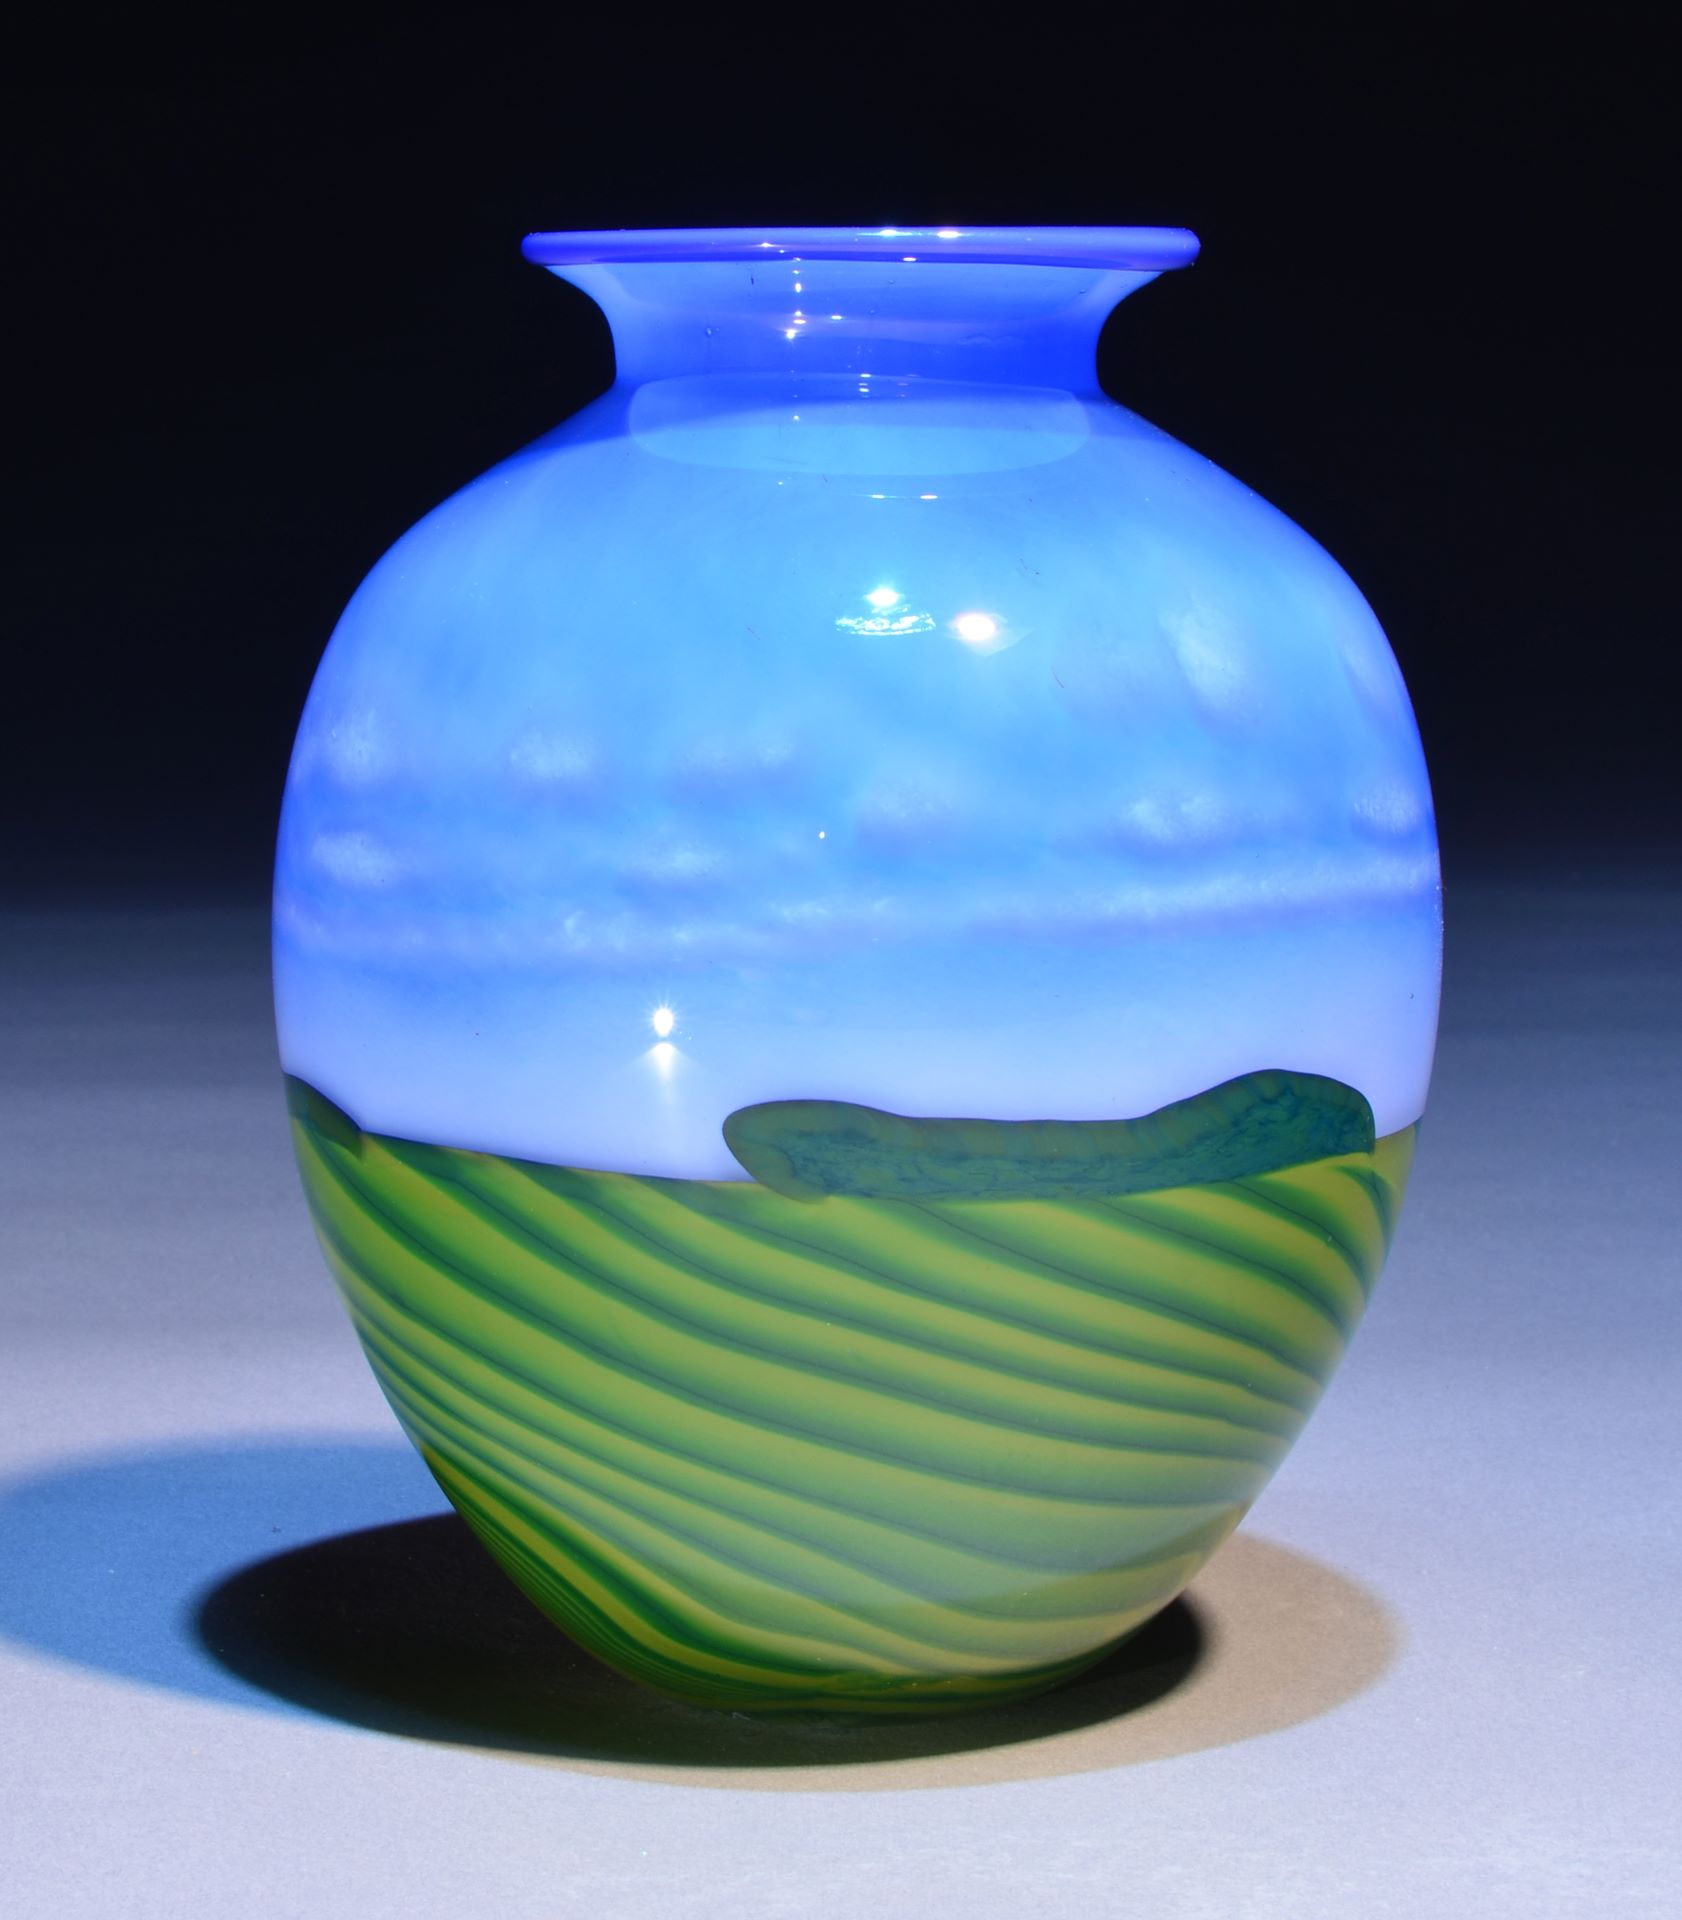 A blown glass vase by Fargo artist Jon Offut.